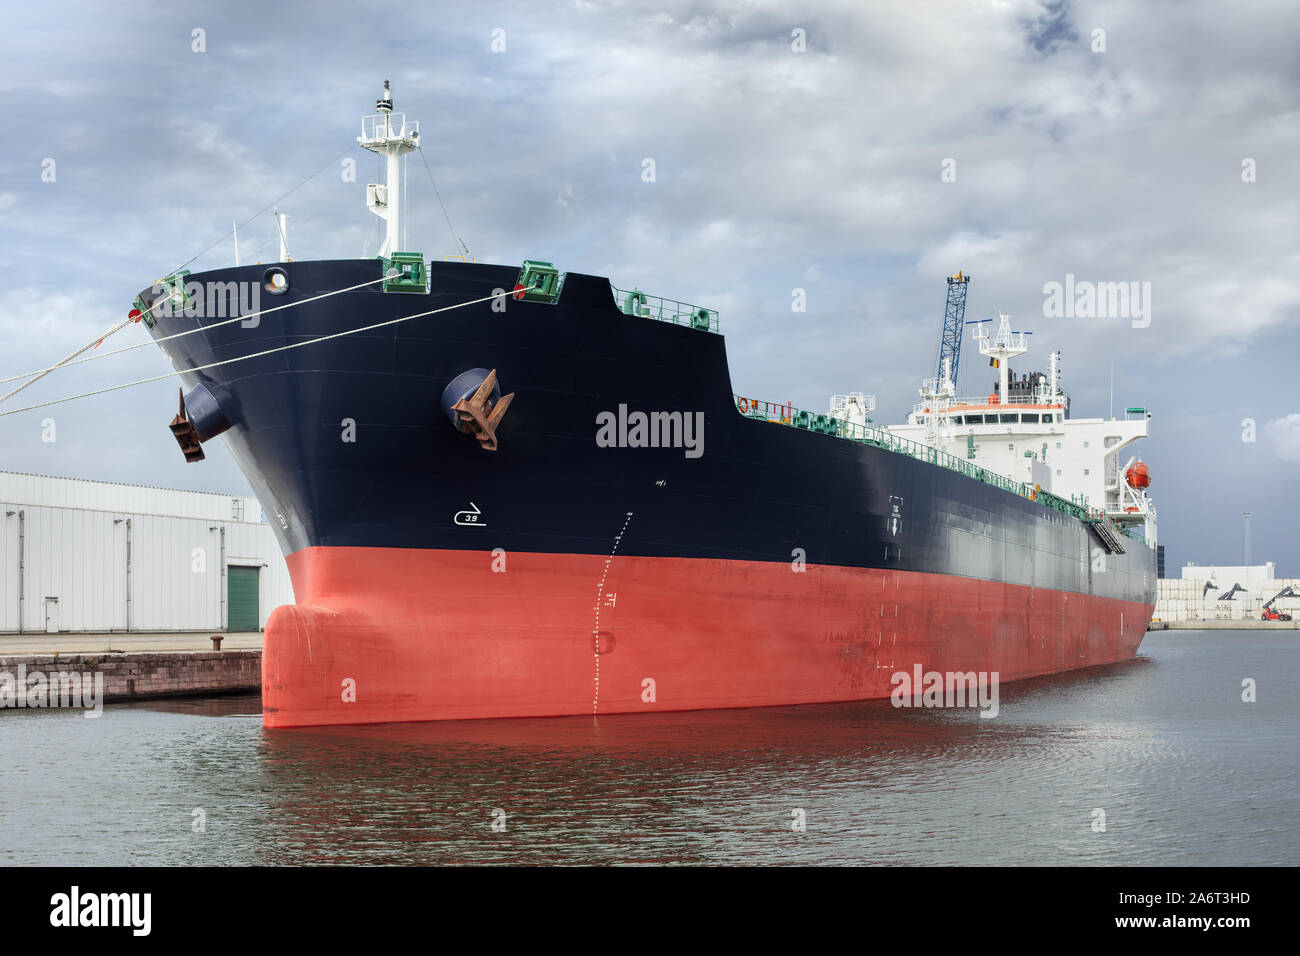 Massive oil tanker moored in Port of Antwerp, Flanders, Belgium Stock Photo